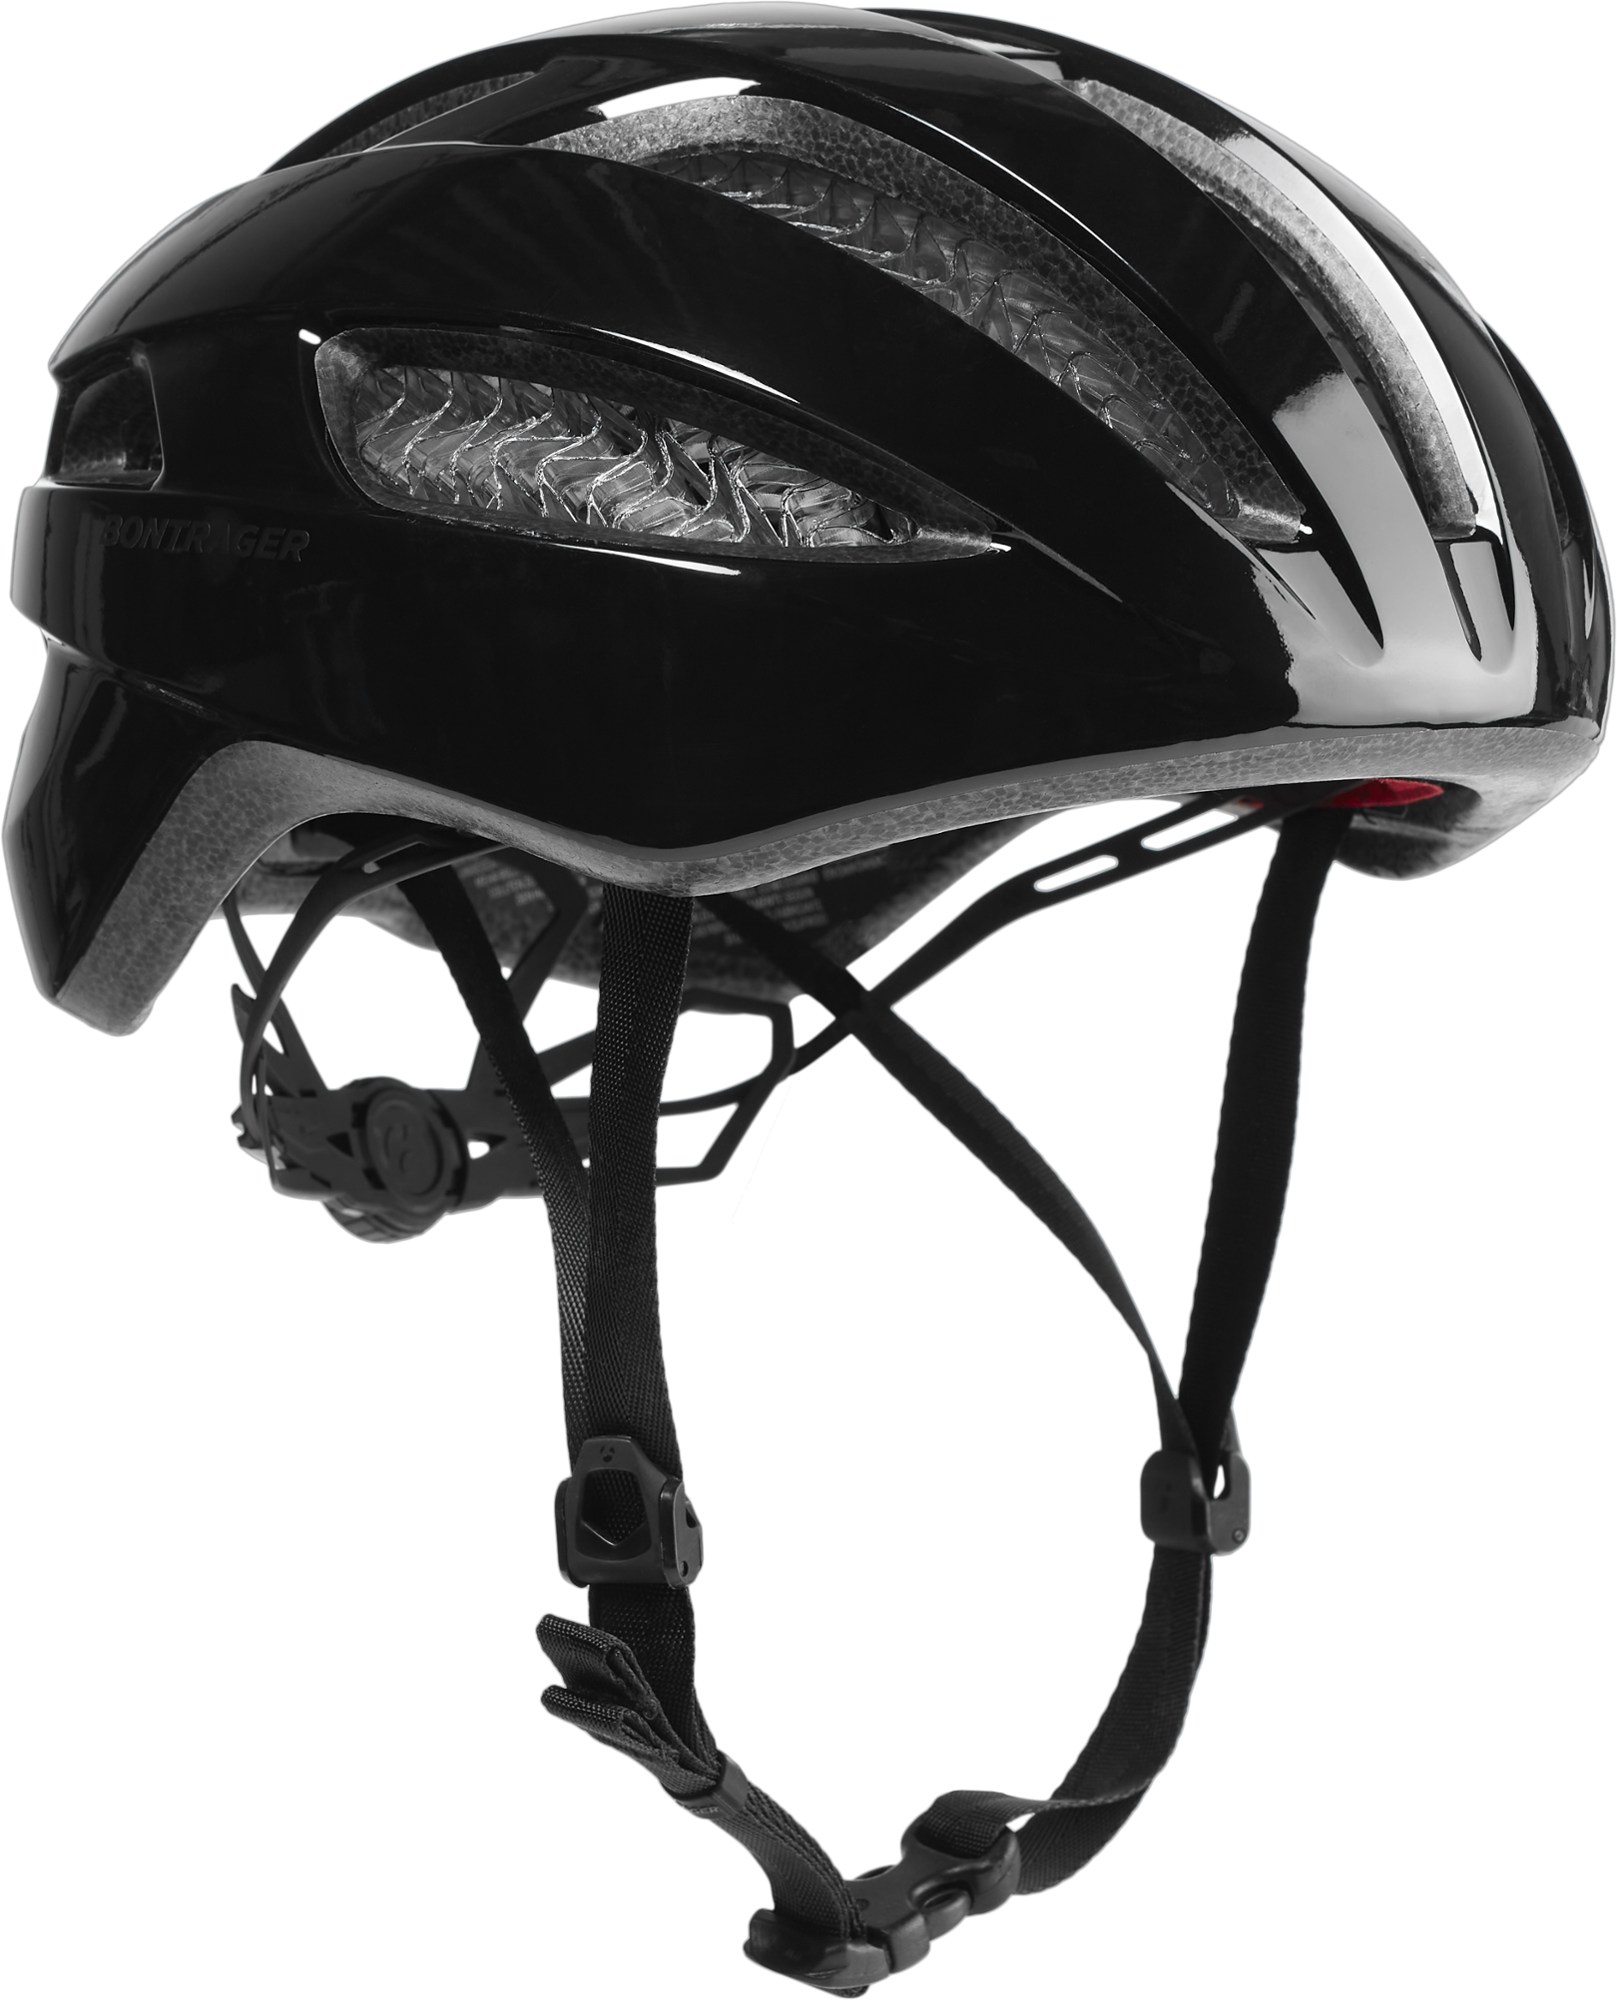 Круглый велосипедный шлем Starvos WaveCel Bontrager, черный yooap round